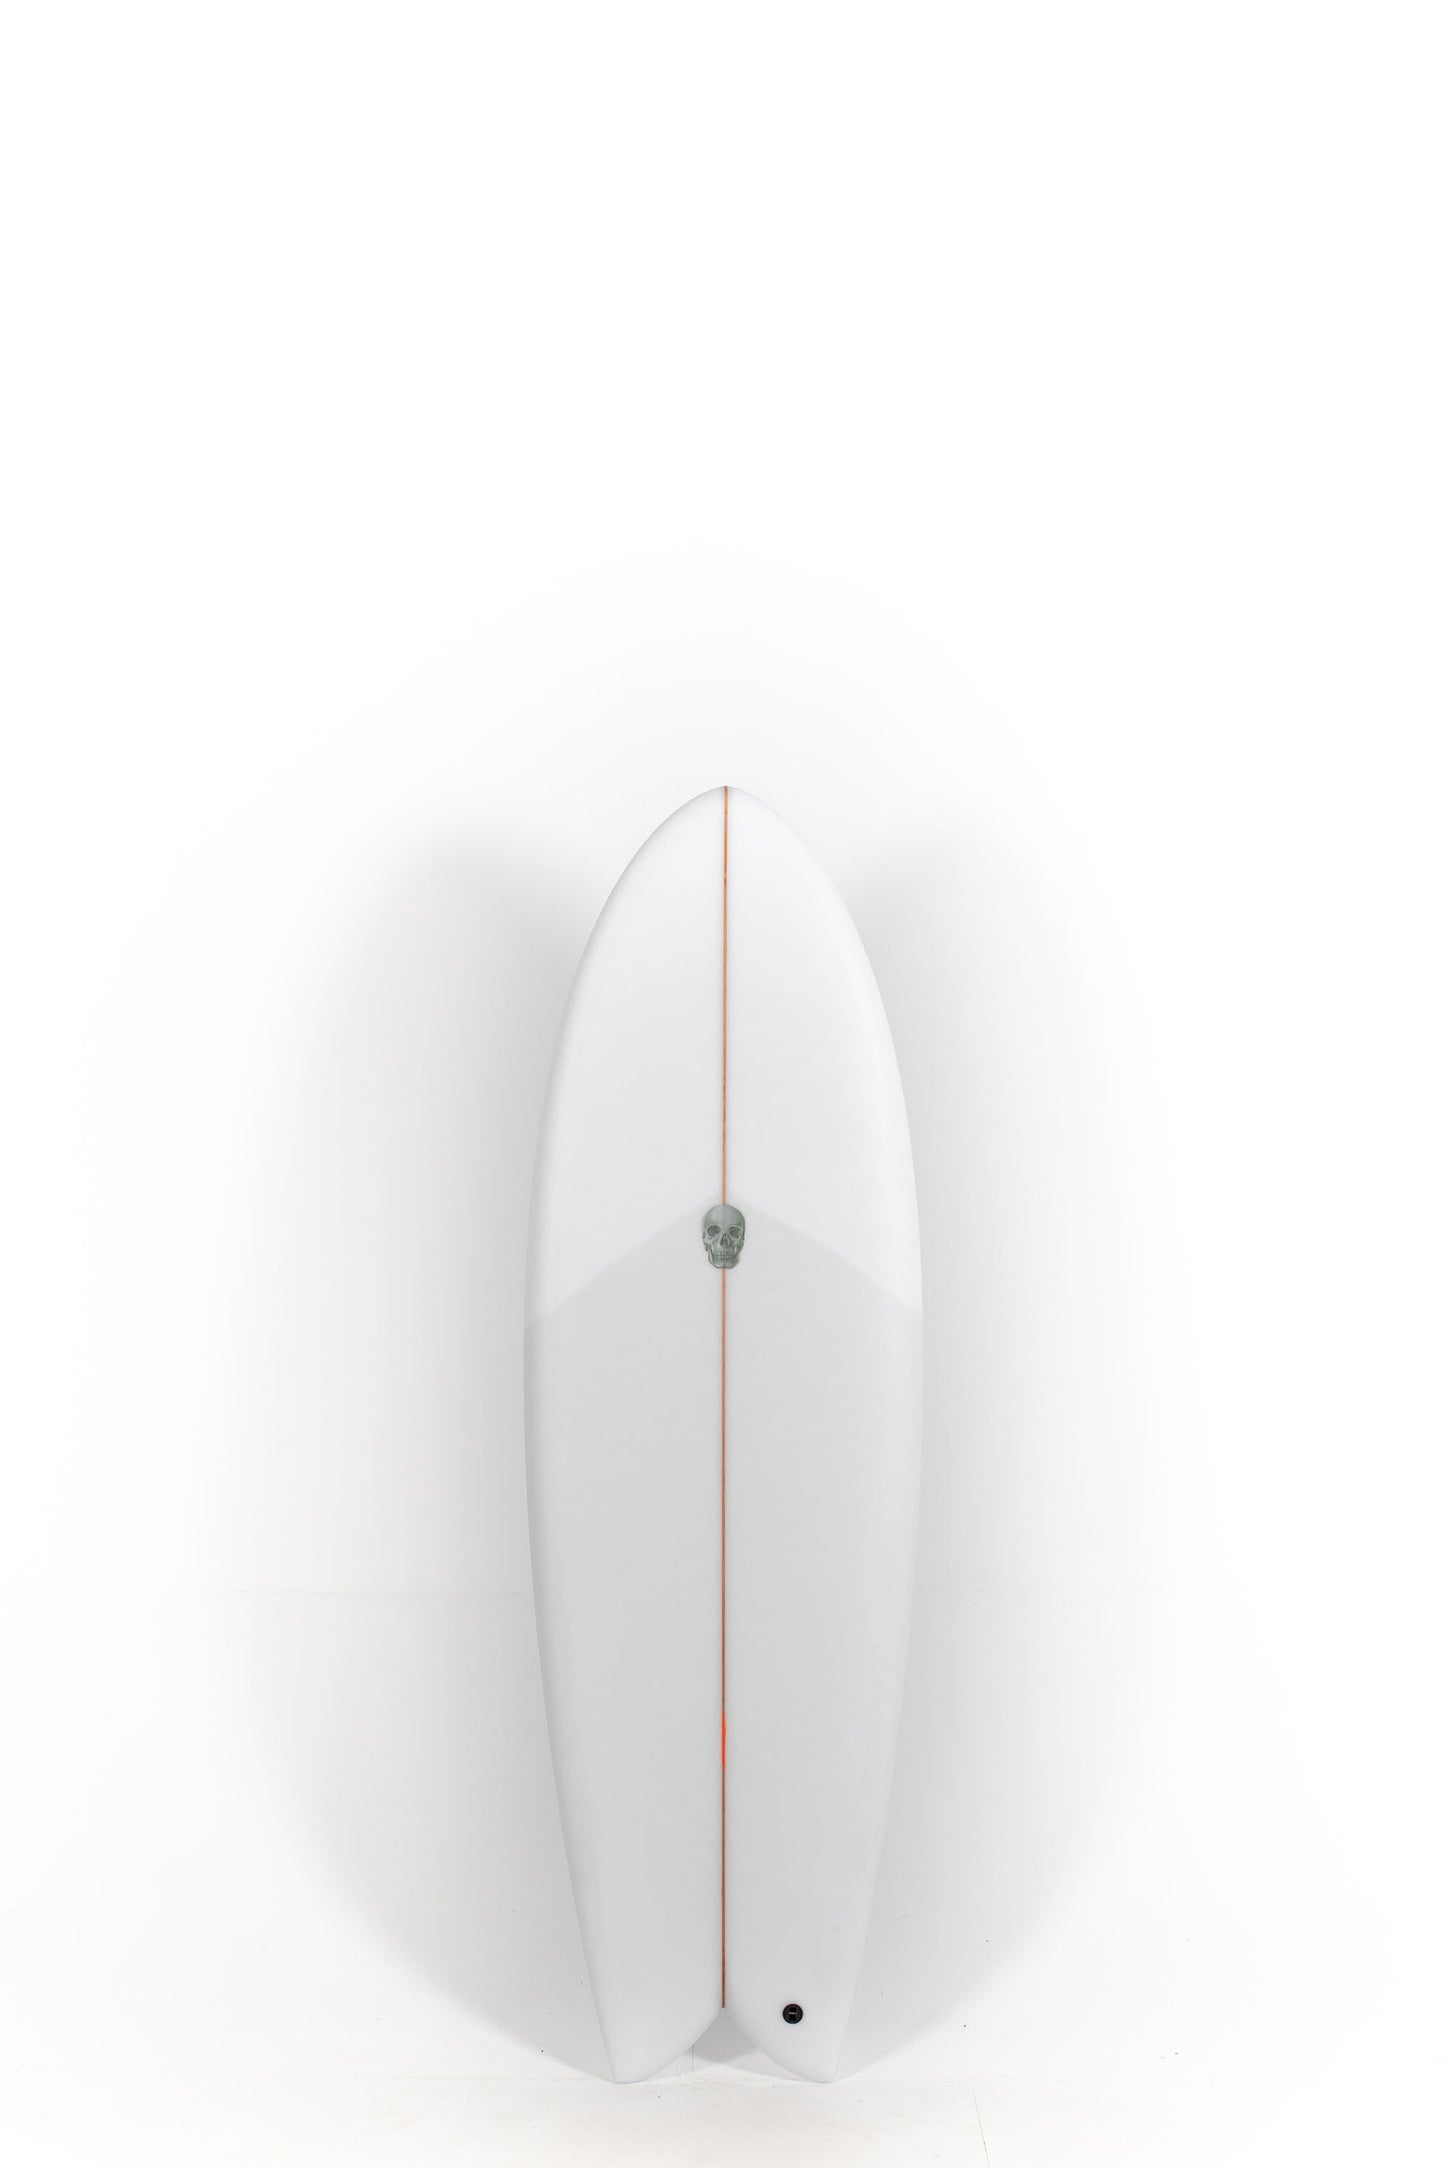 
                  
                    Pukas Surf Shop - Christenson Surfboards - MYCONAUT - 5'7" x 20 3/4 x 2 1/2 - CX04698
                  
                